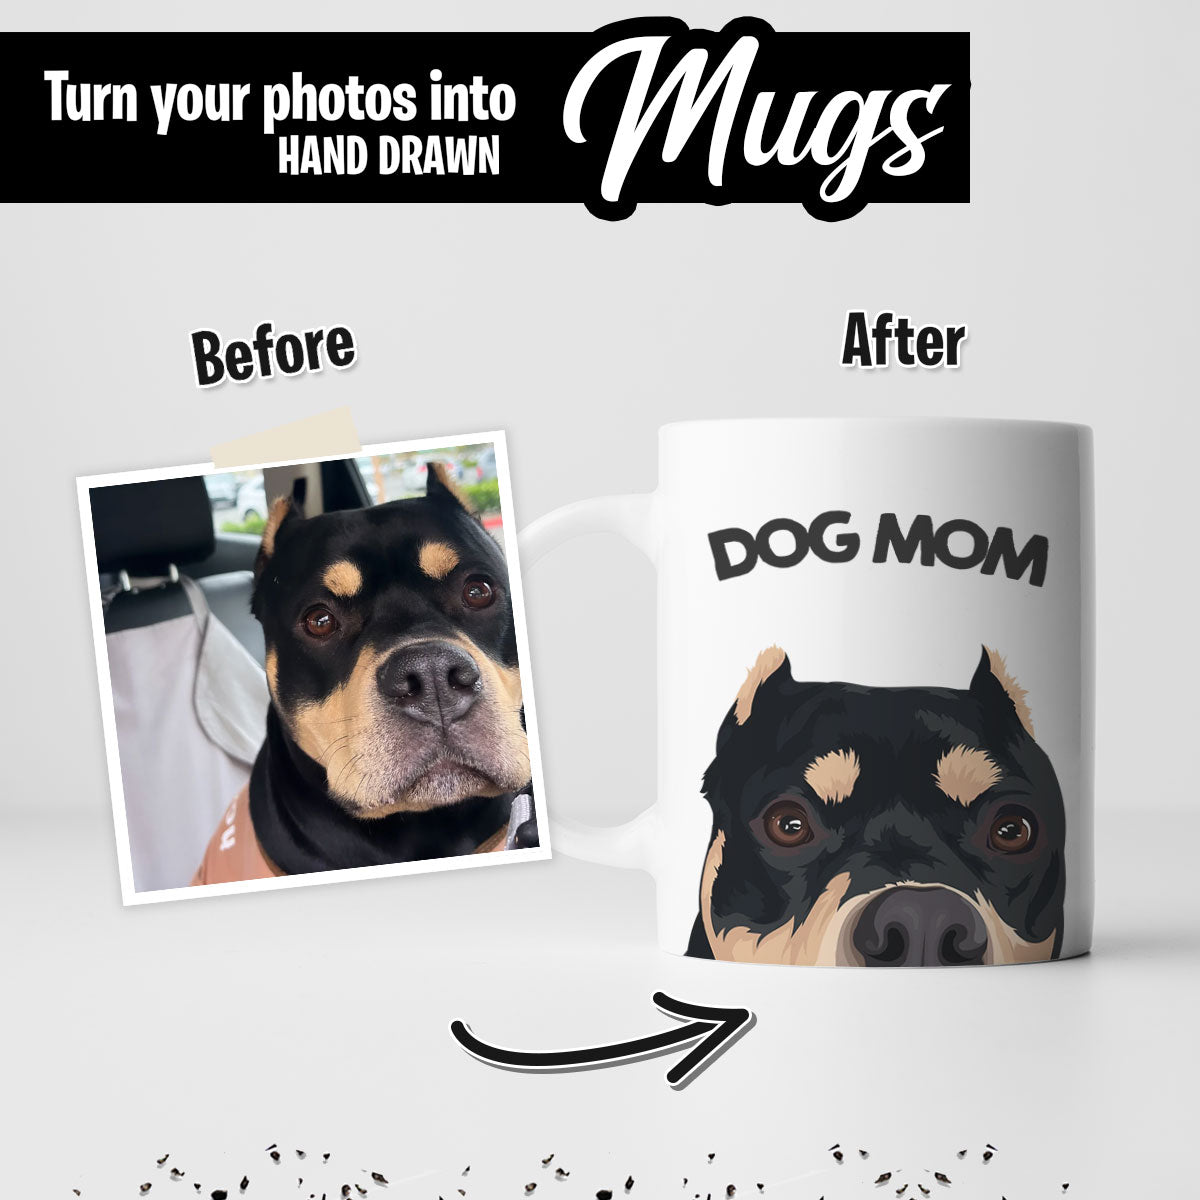 Custom Dog Mom Mug - Perfect for Mother's Day